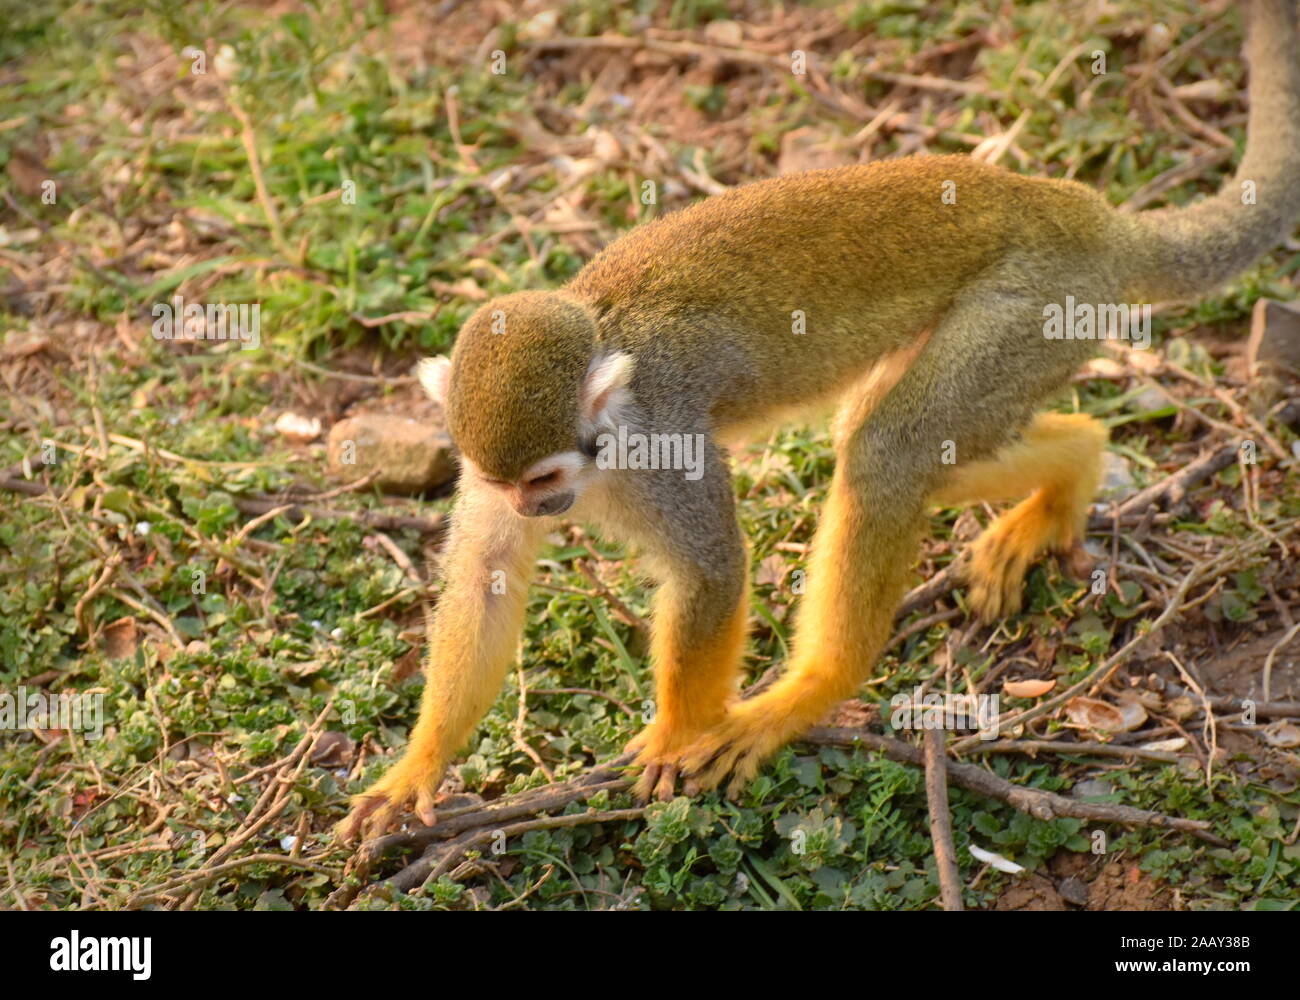 Mono ardilla amarillo caminar sobre el suelo Fotografía de stock